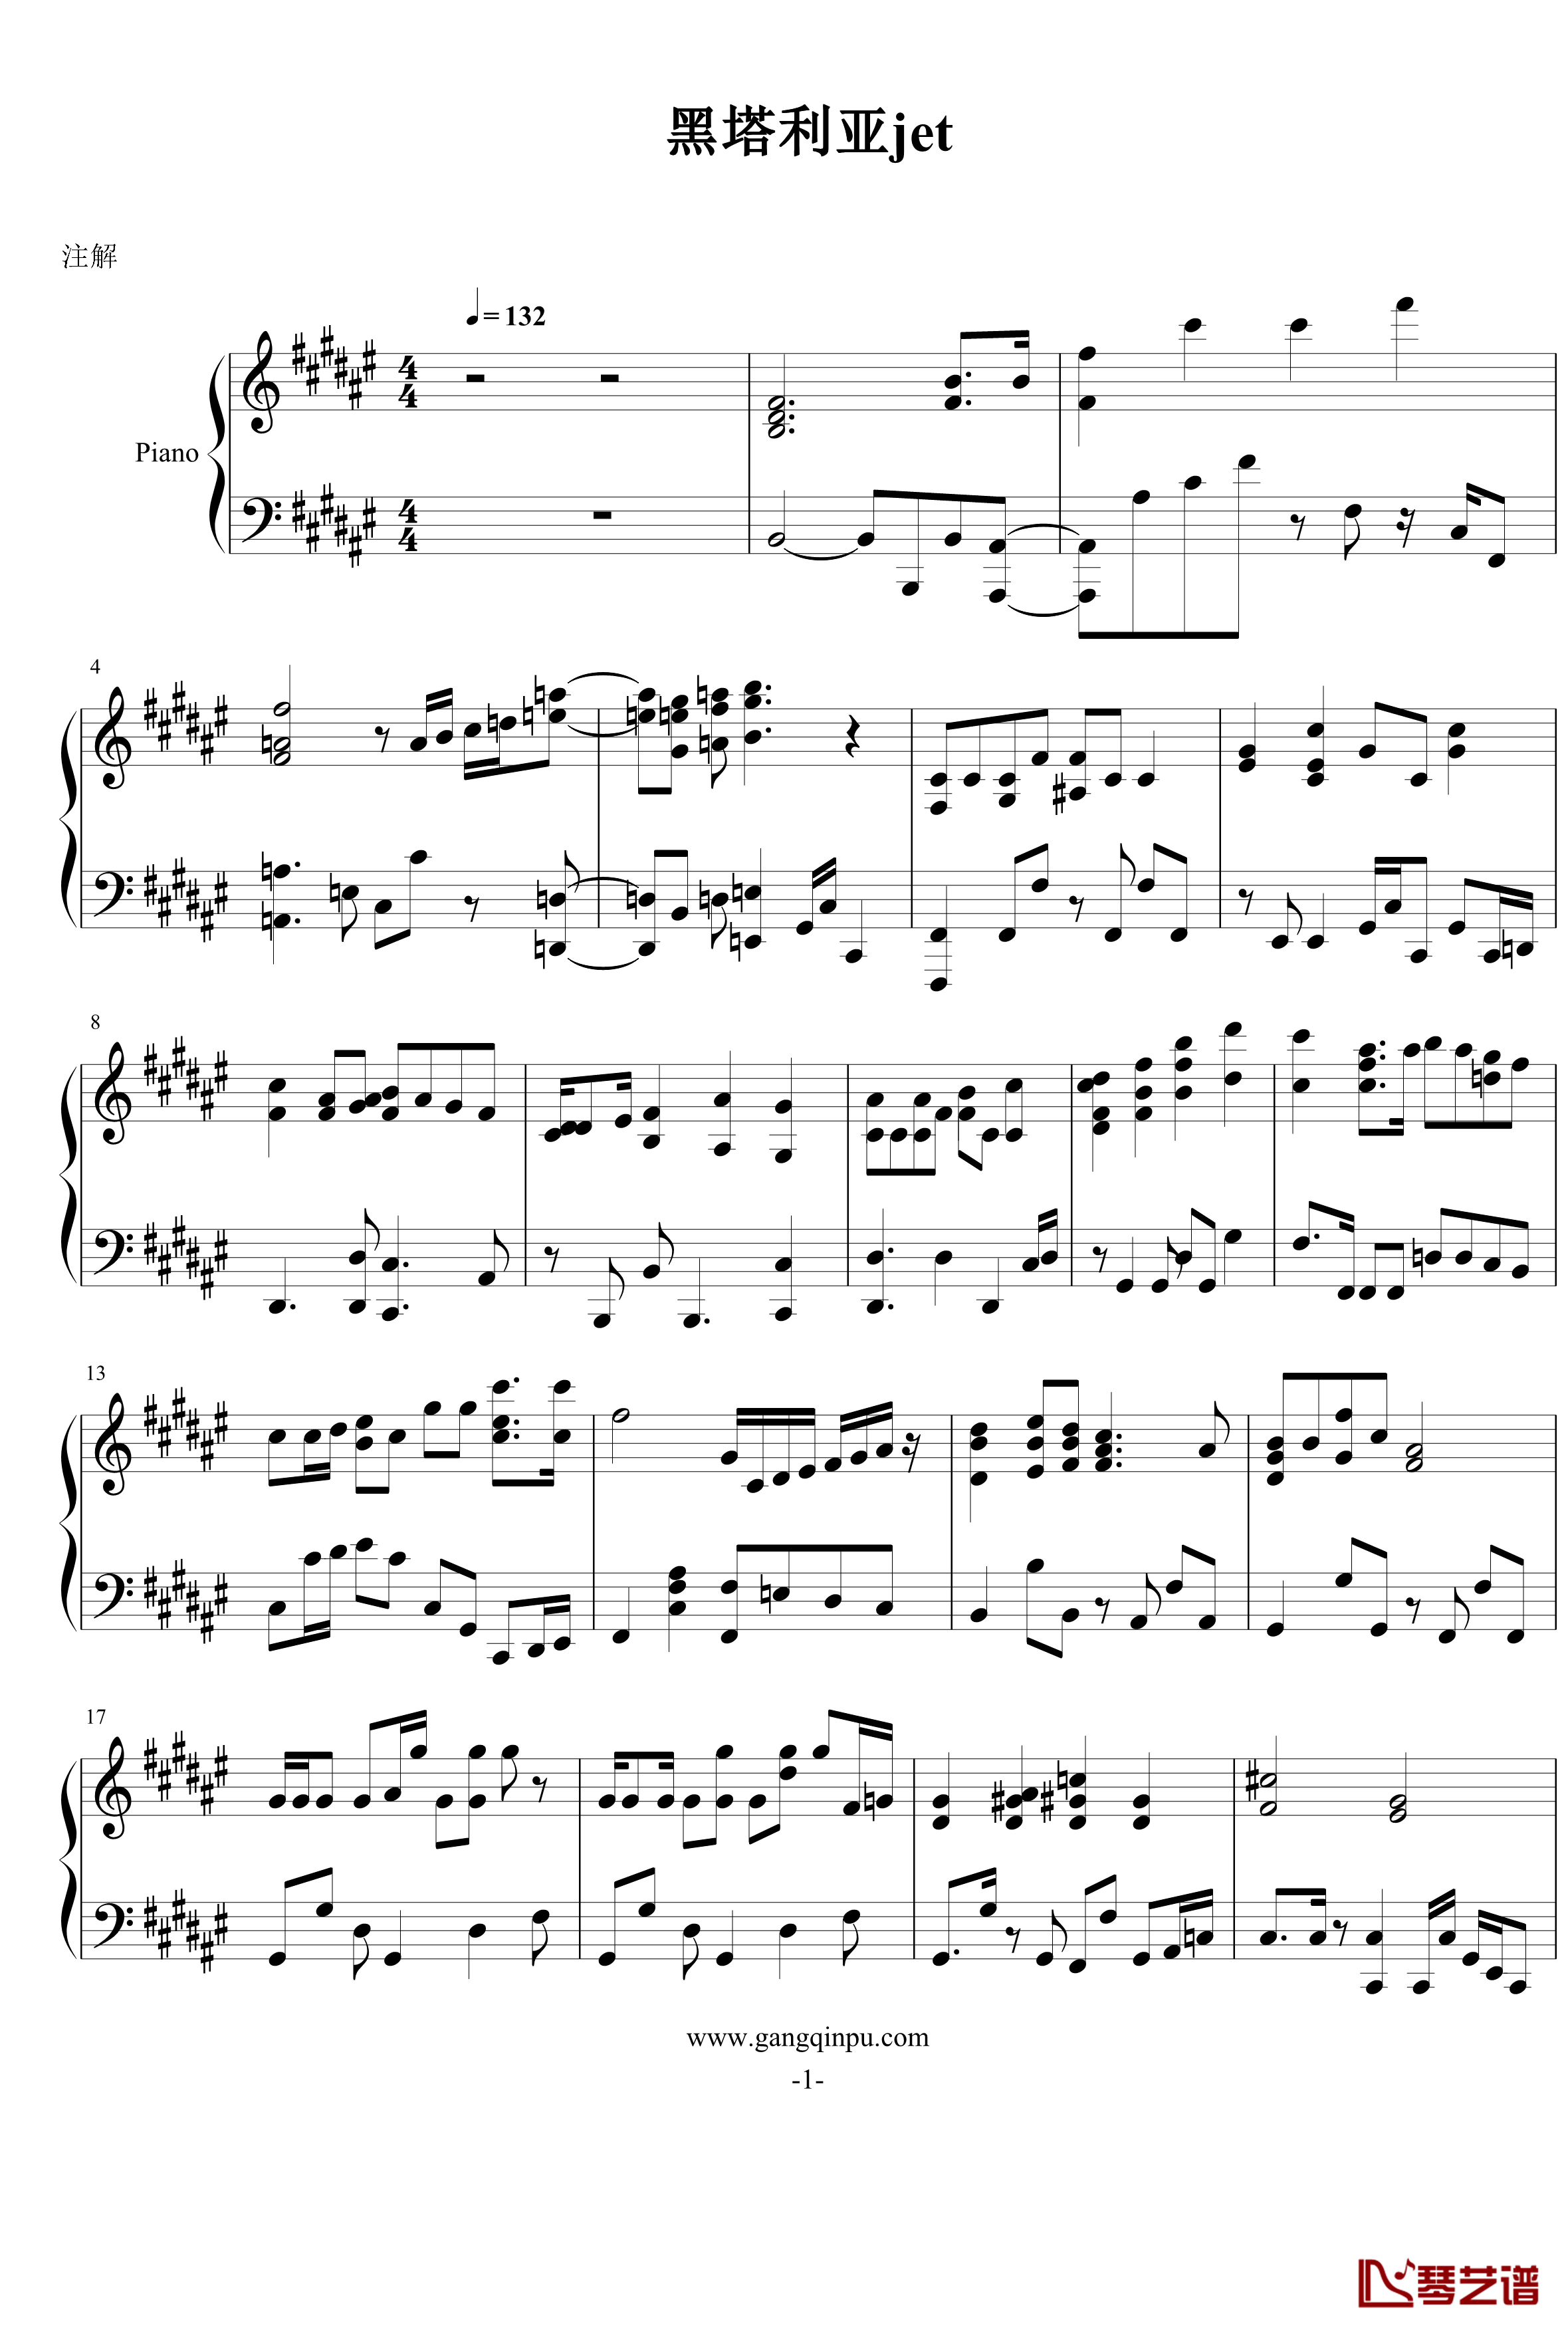 黑塔利亚第六季钢琴谱-ヘタリアン☆ジェット1